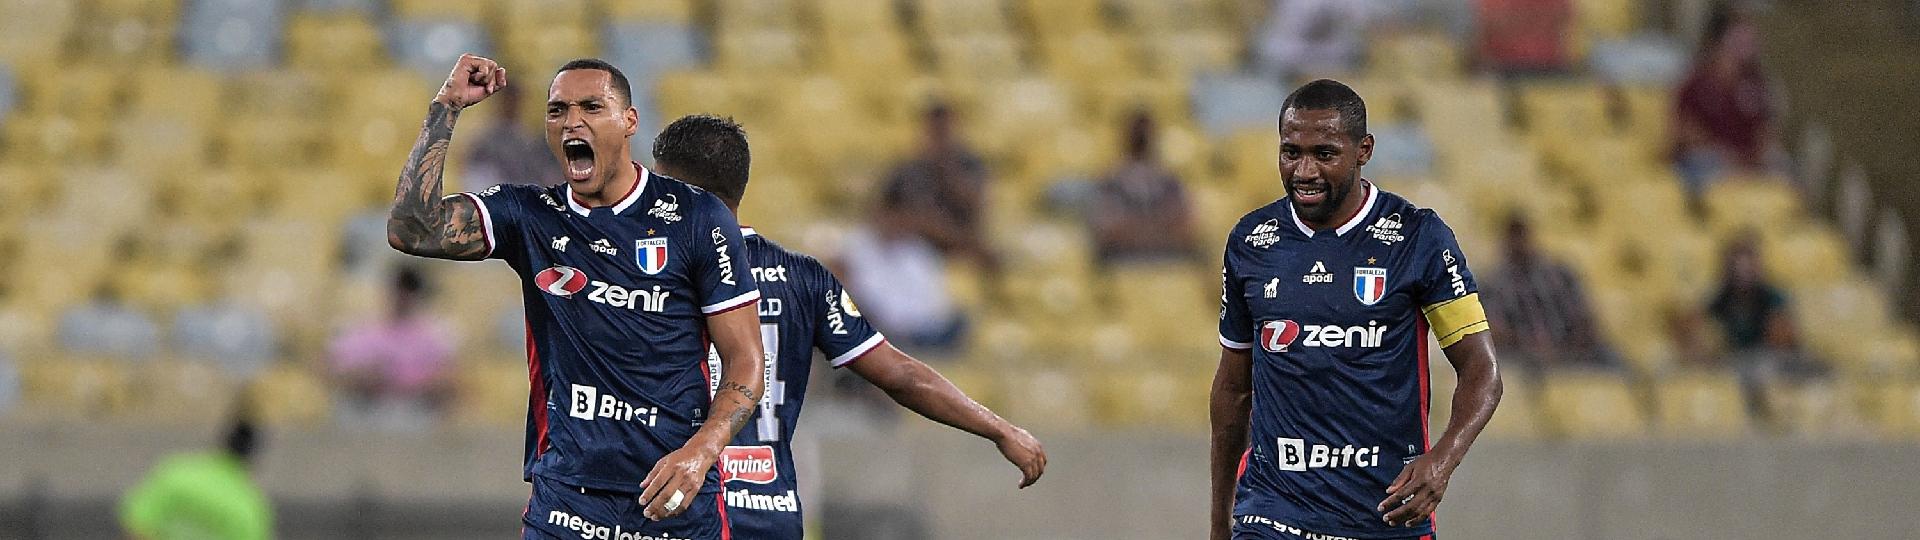 Titi marcou o segundo gol do Fortaleza na partida contra Fluminense, no Maracanã